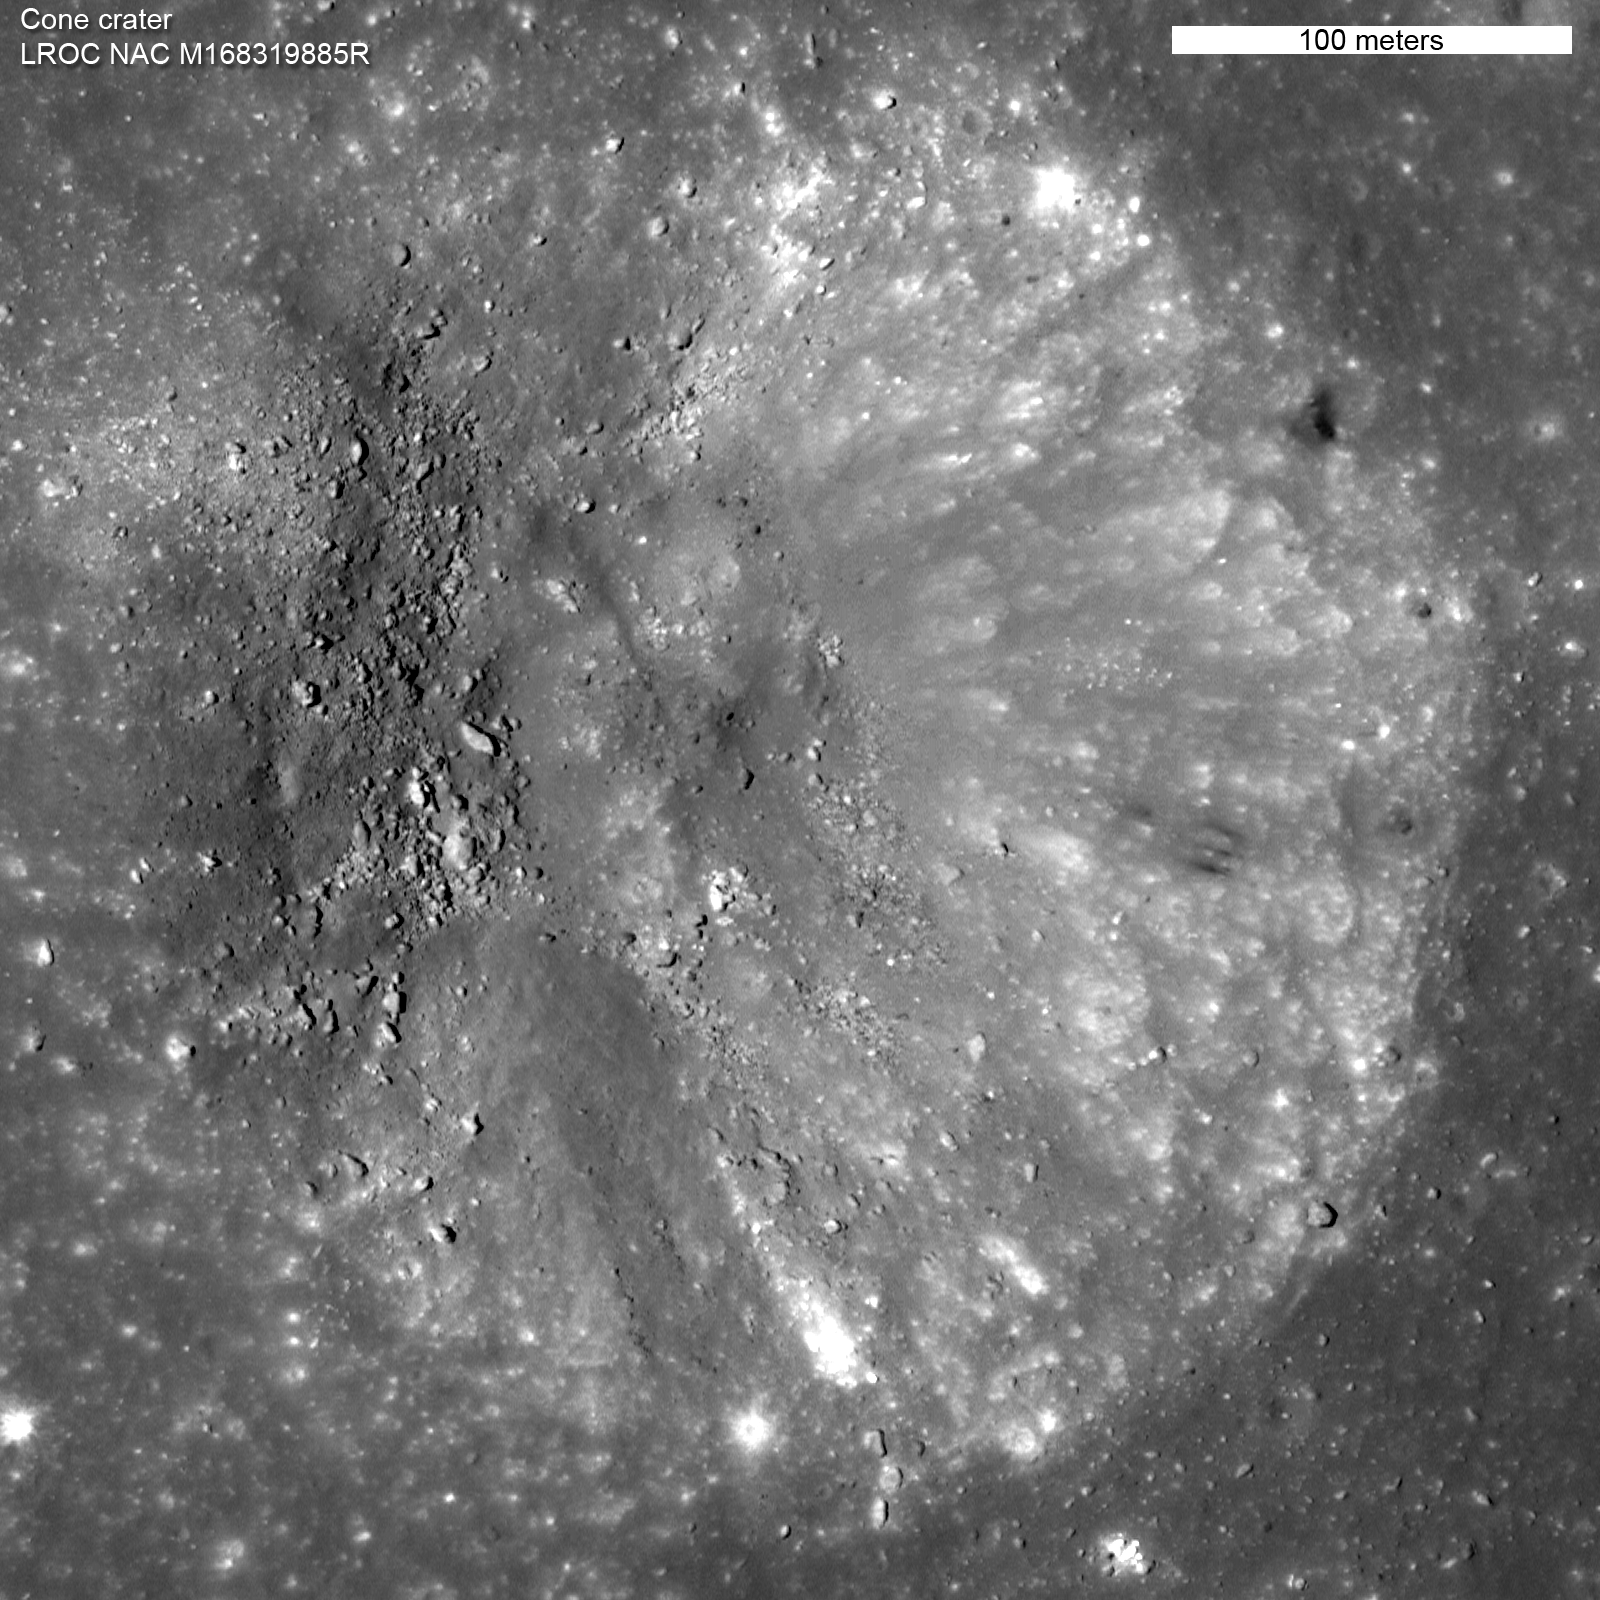 Cone crater